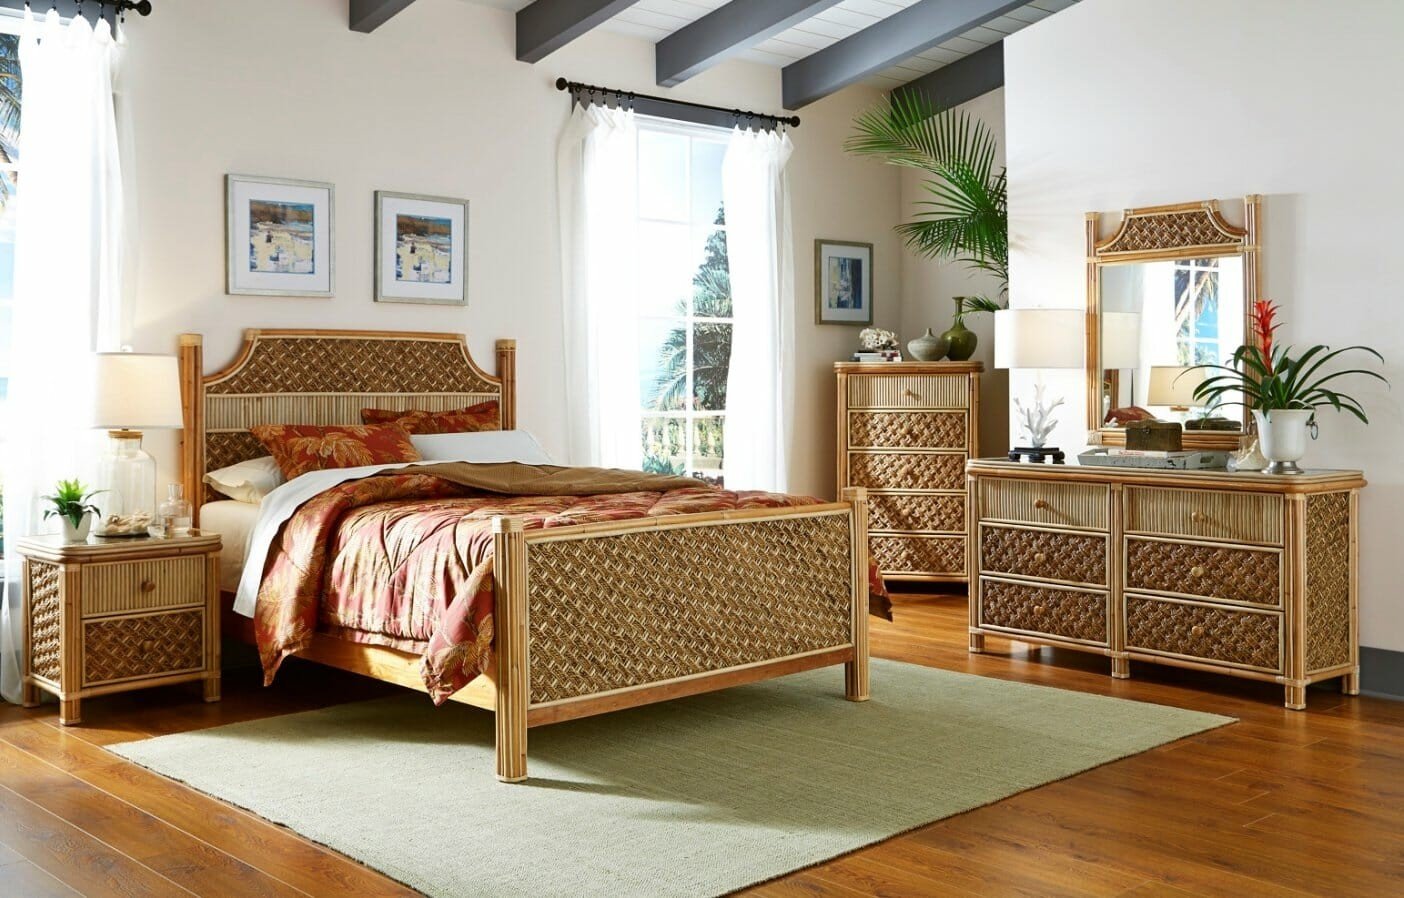 Плетеная мебель в интерьере гостиной: природный материал в современном мире (40 фото)